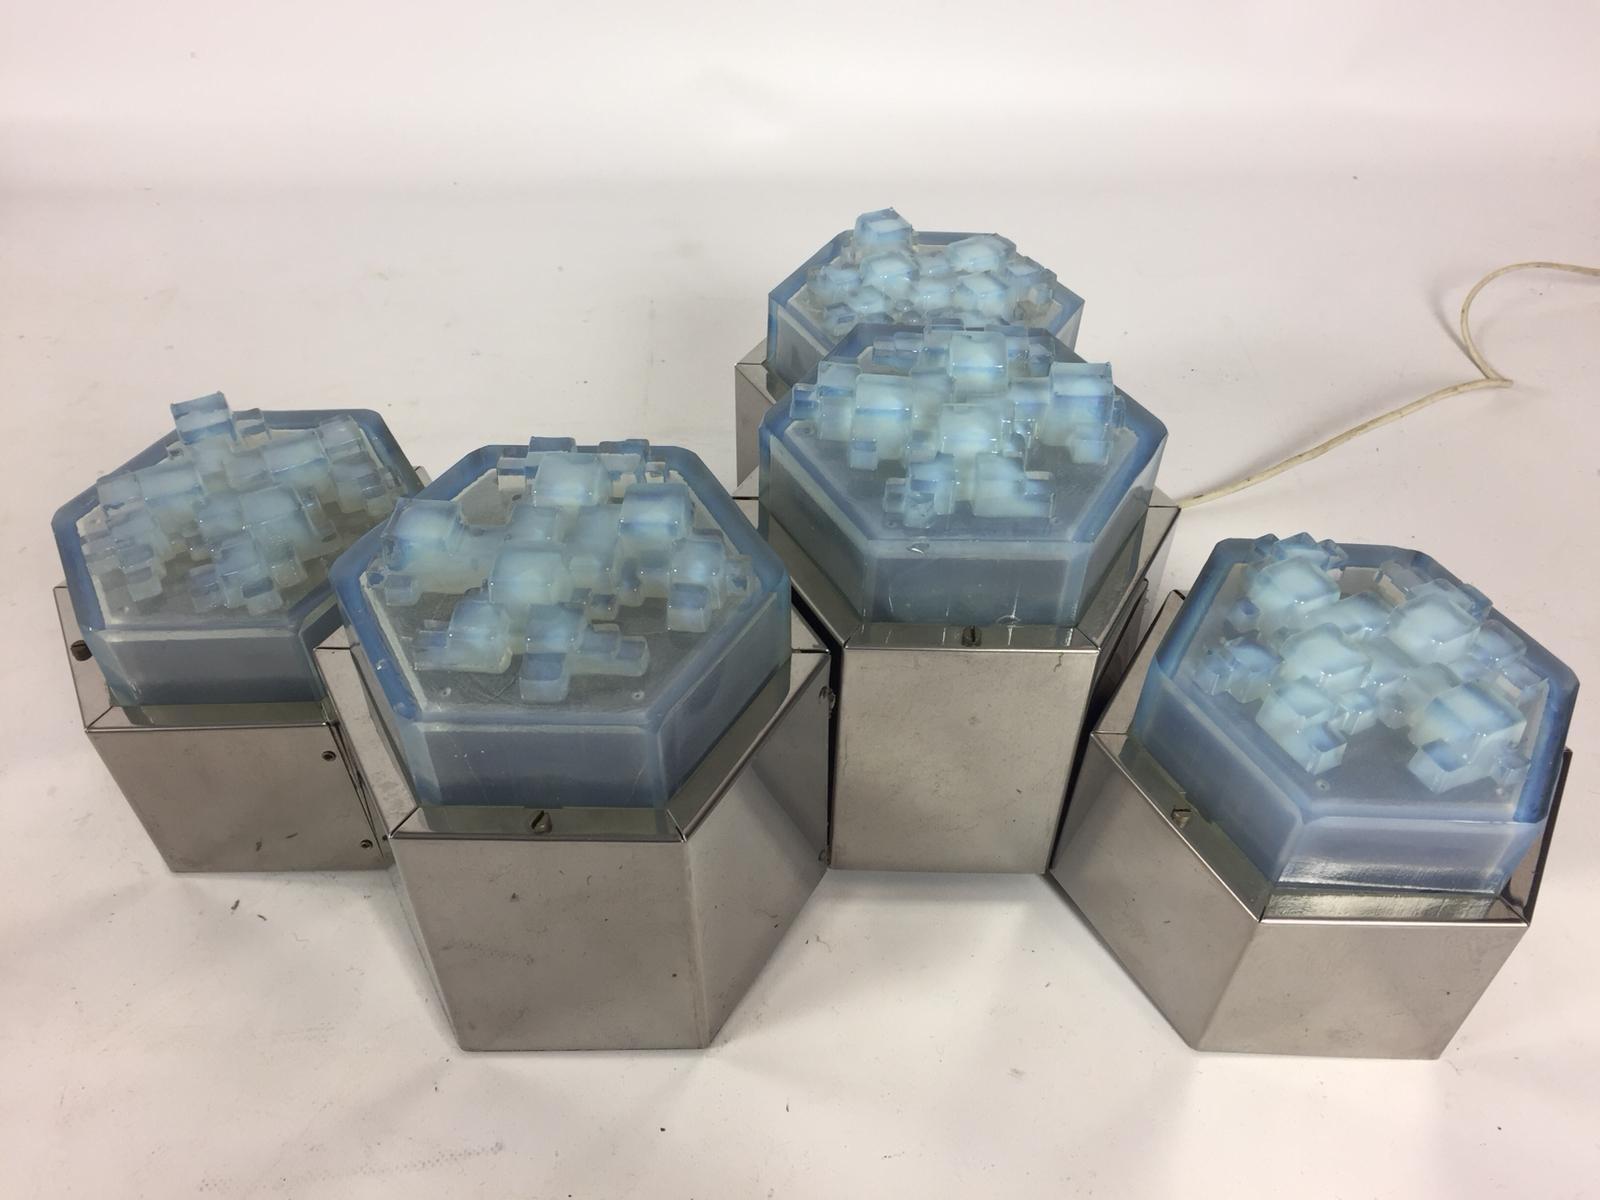 Superbes montures encastrées en verre Poliarte et hexagone chromé. Le verre bleu présente un détail géométrique tridimensionnel. Fixation en chrome avec un peu de patine. Nouvellement reconnecté. Vendu par lot de 5 avec une hauteur différente. Peut